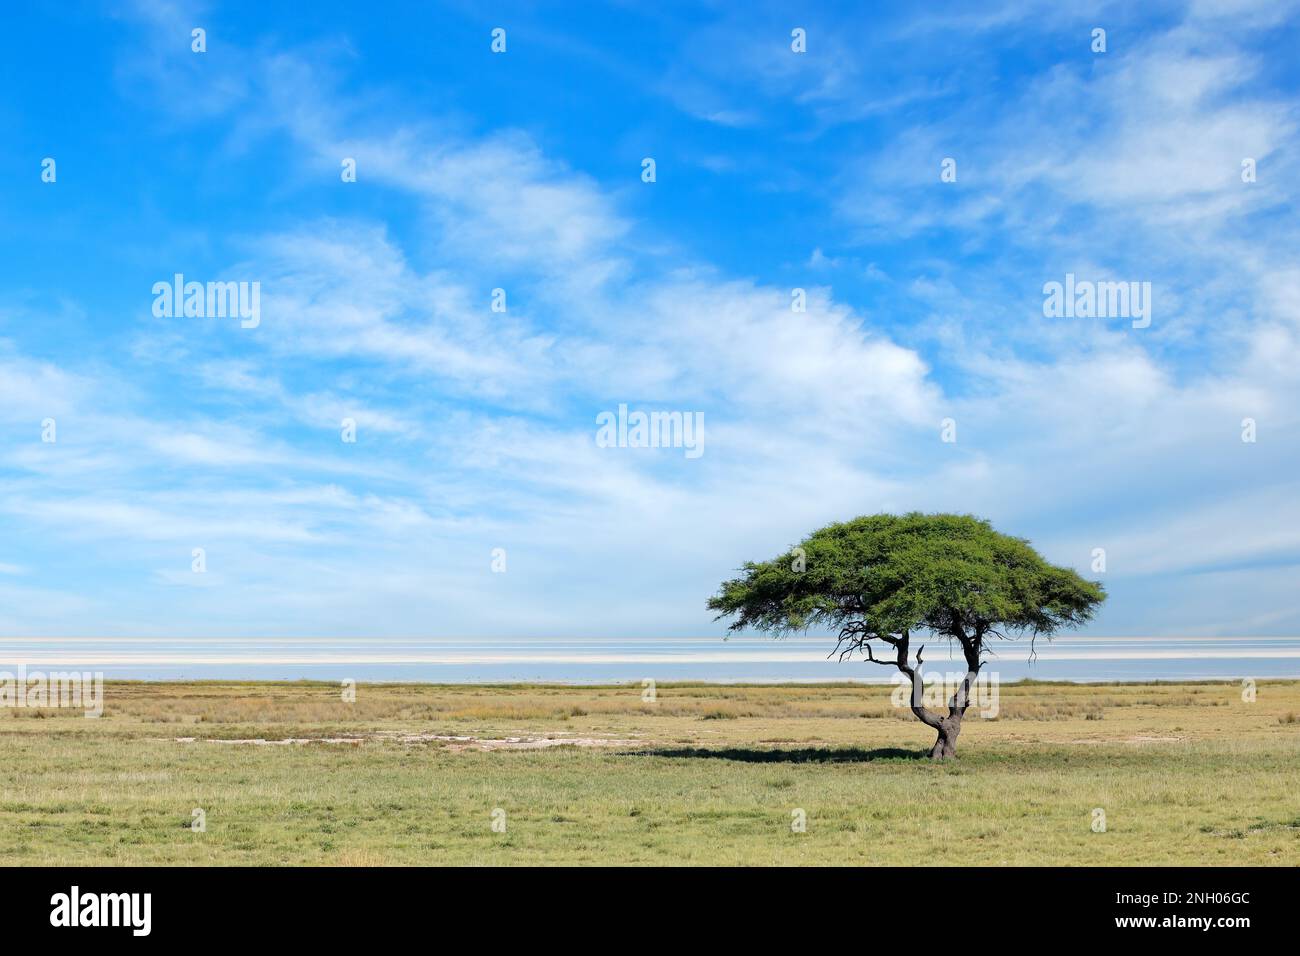 Árbol contra un cielo azul con nubes en las llanuras abiertas del Parque Nacional de Etosha, Namibia Foto de stock